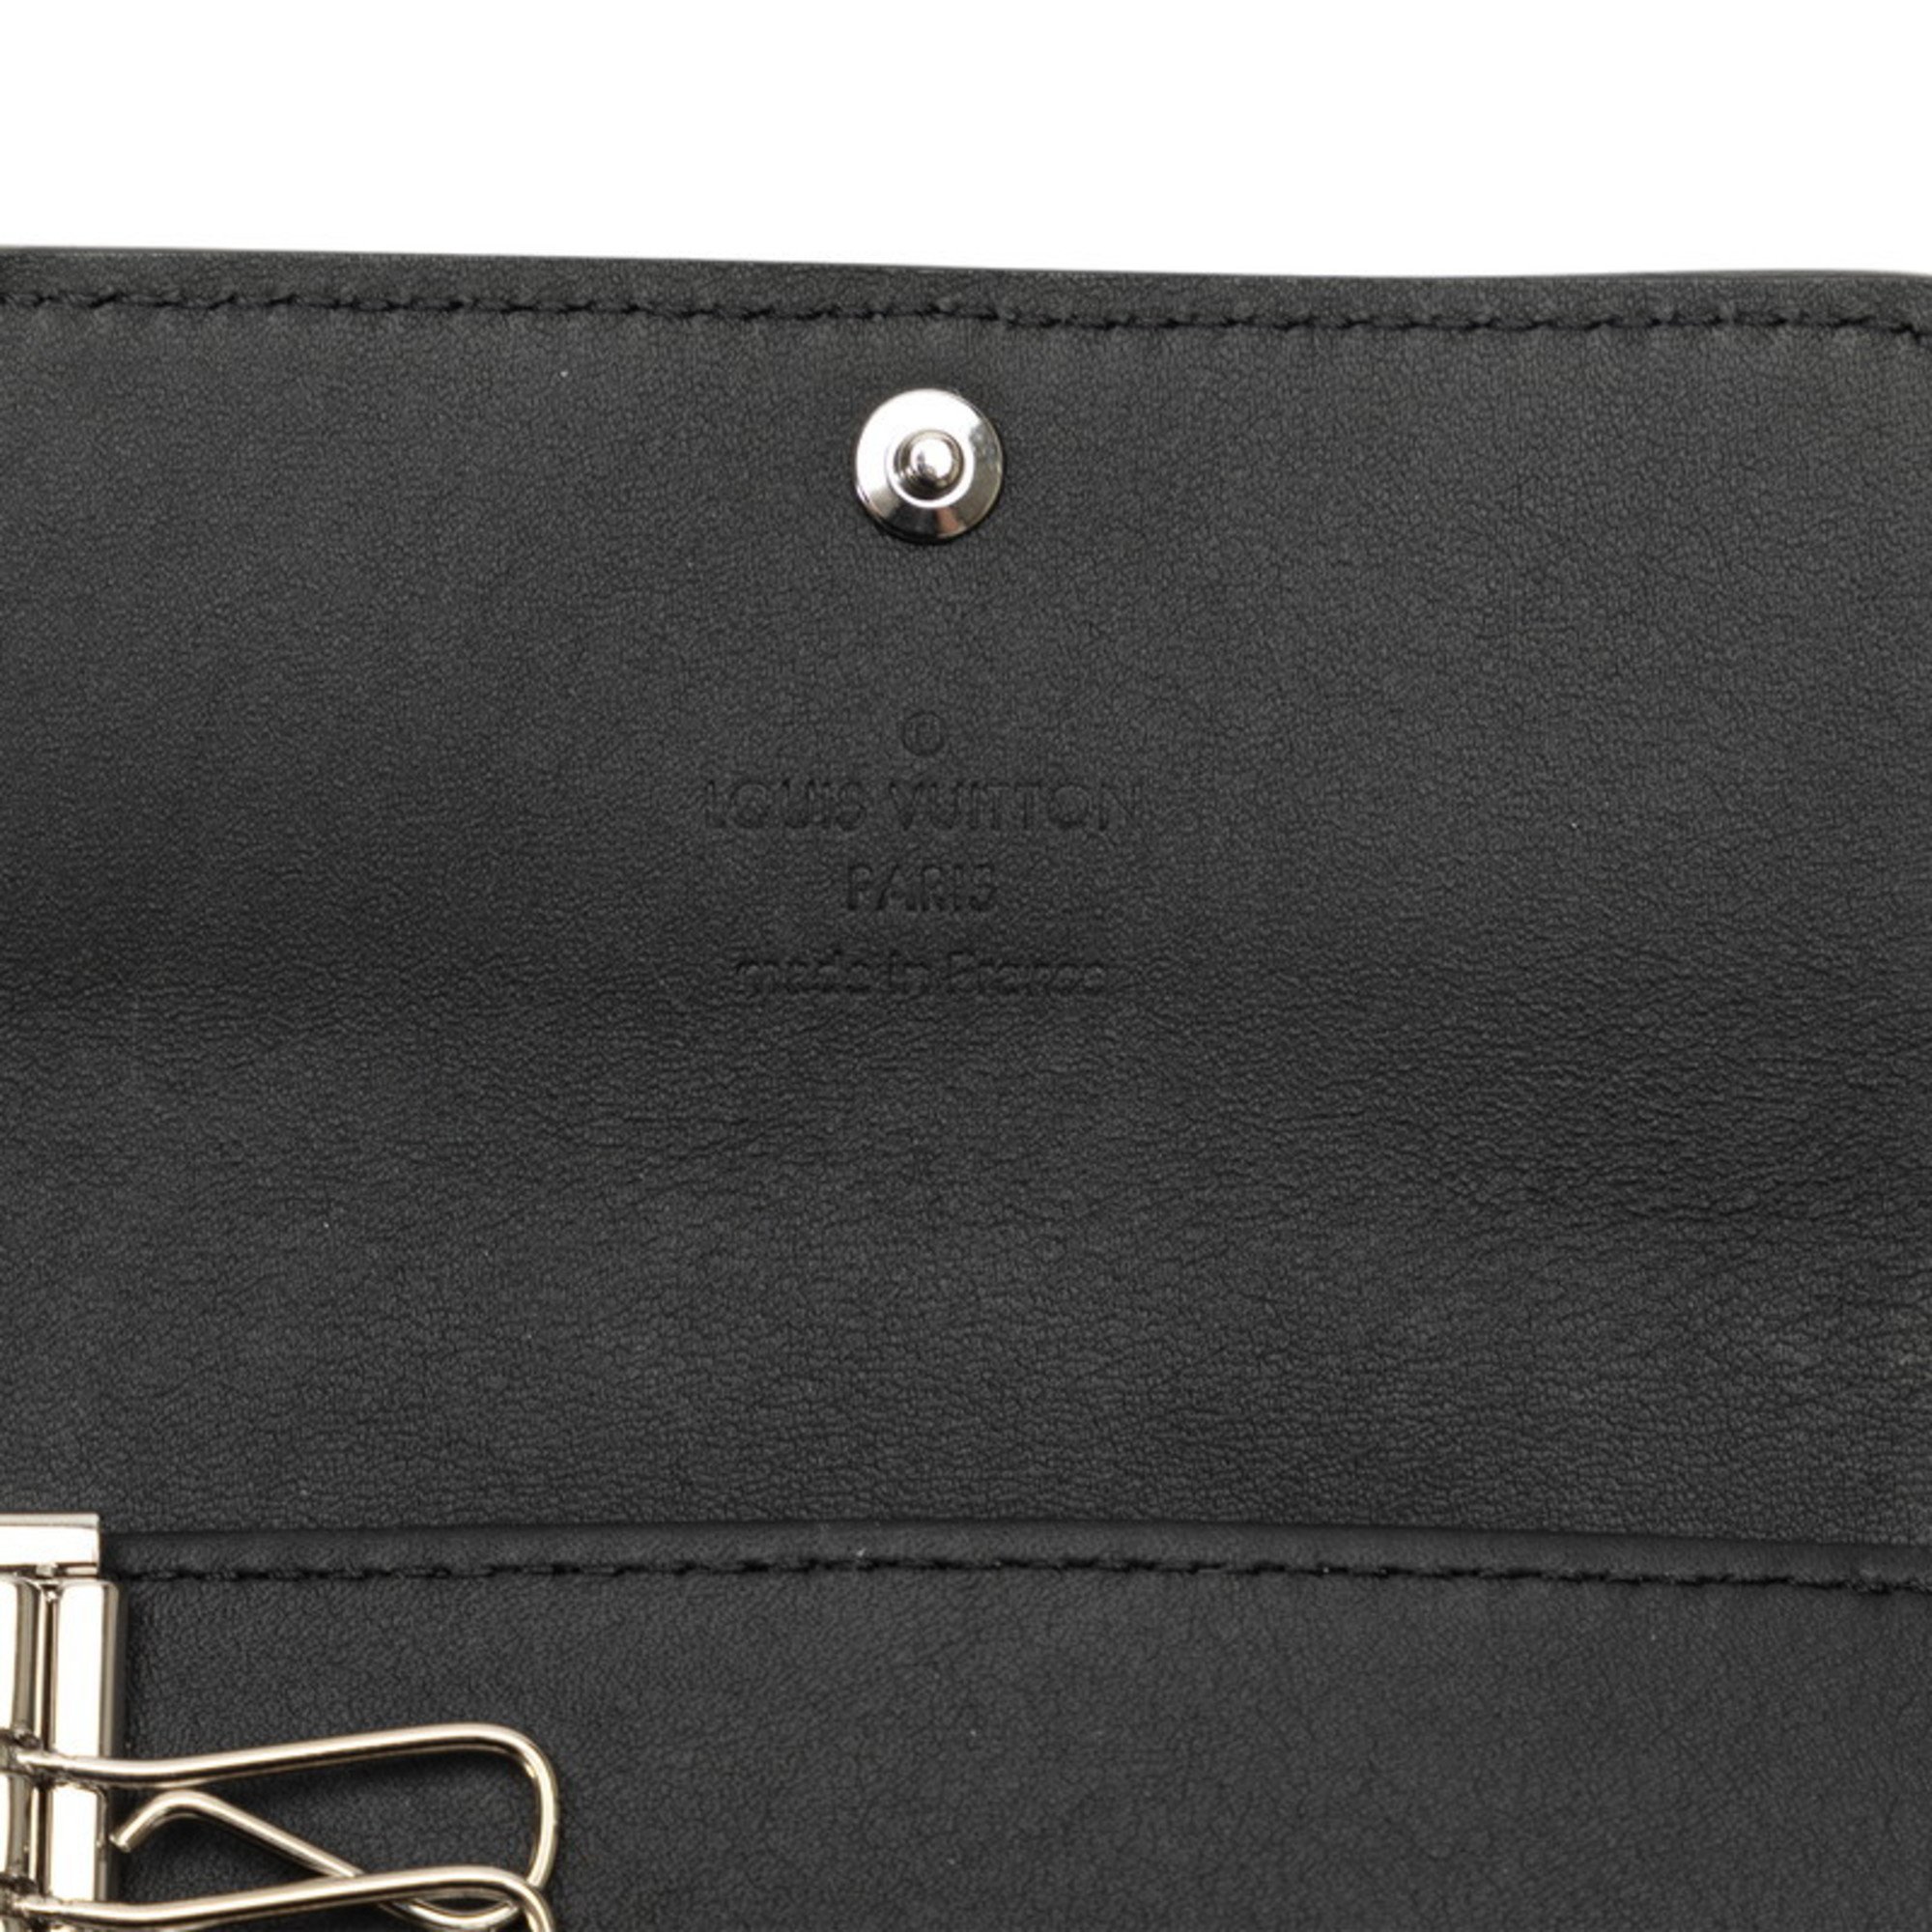 Louis Vuitton Monogram Taurillon Multicle 6 Key Case M82604 Noir Black Leather Men's LOUIS VUITTON